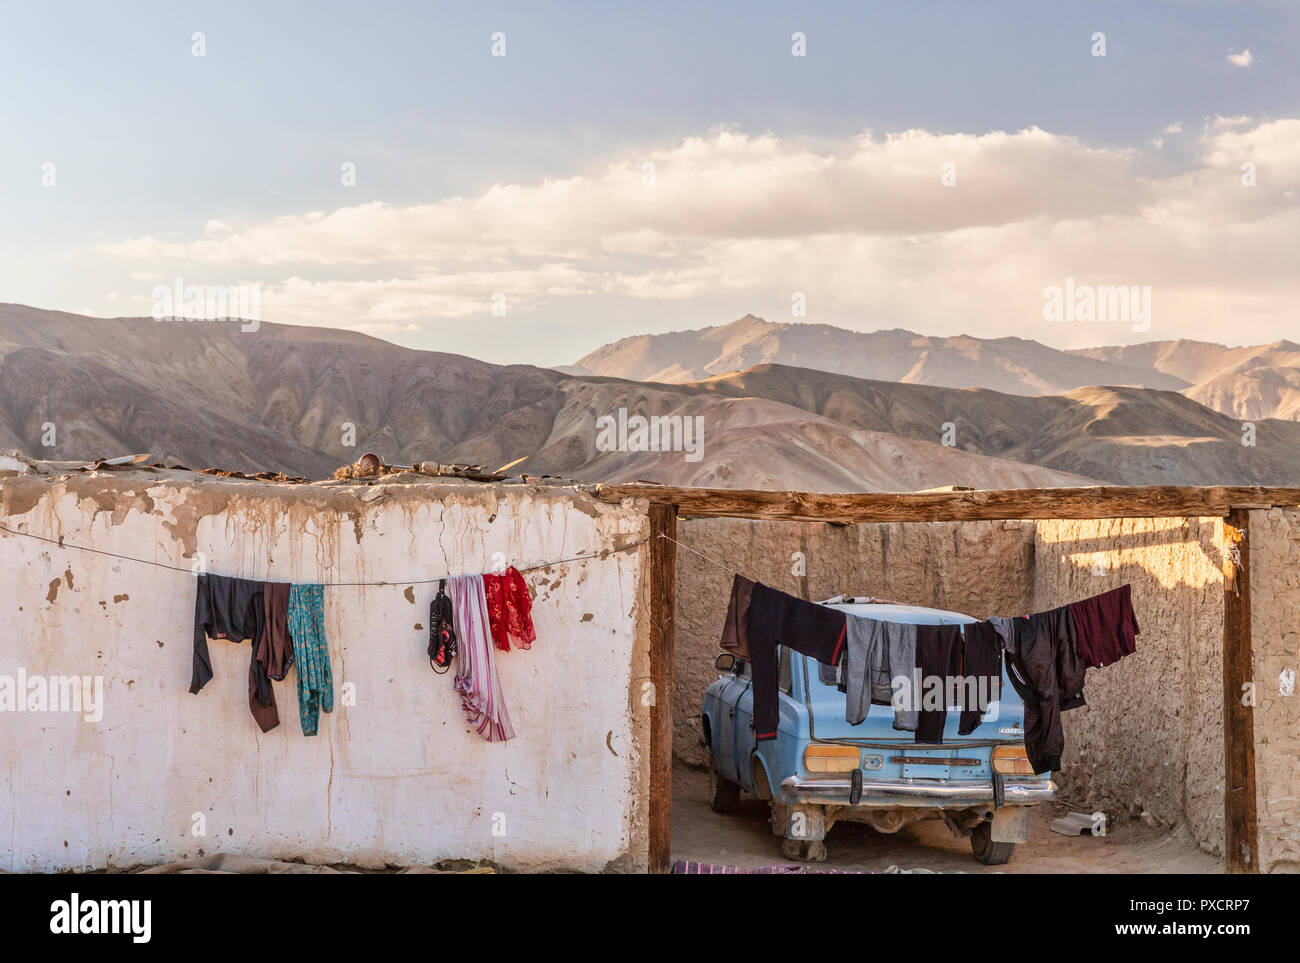 Casa encaladas y coche en luz del atardecer en la aldea, Bulunkul Bulunkul, el Pamir Highway, Gorno Badakhshan, Tayikistán Foto de stock